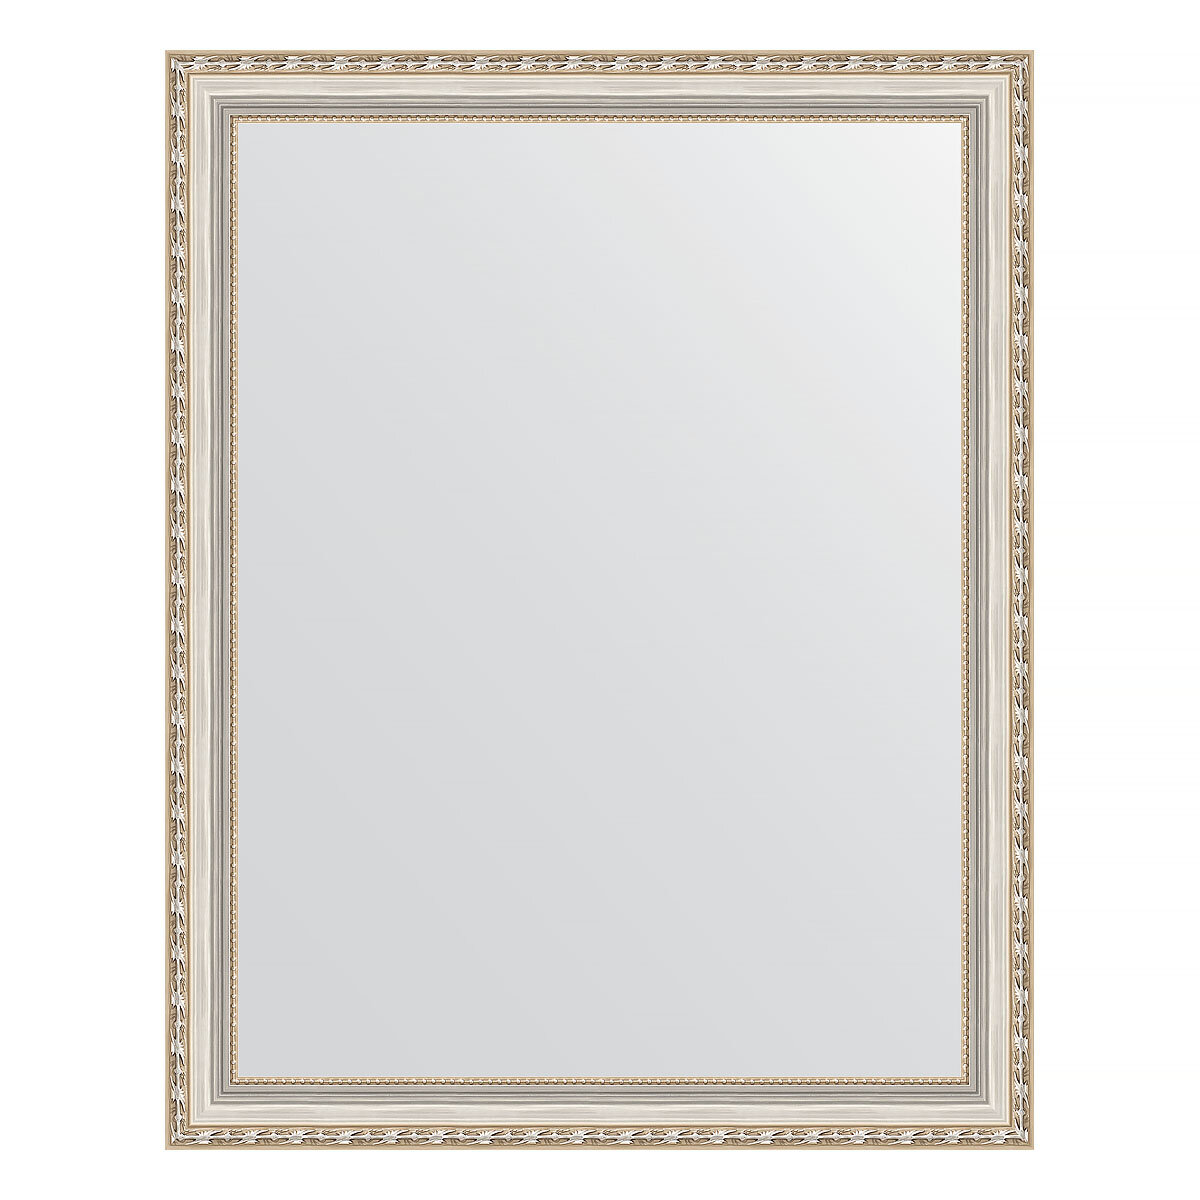 Evoform Зеркало настенное EVOFORM в багетной раме версаль серебро, 75х95 см, BY 3270